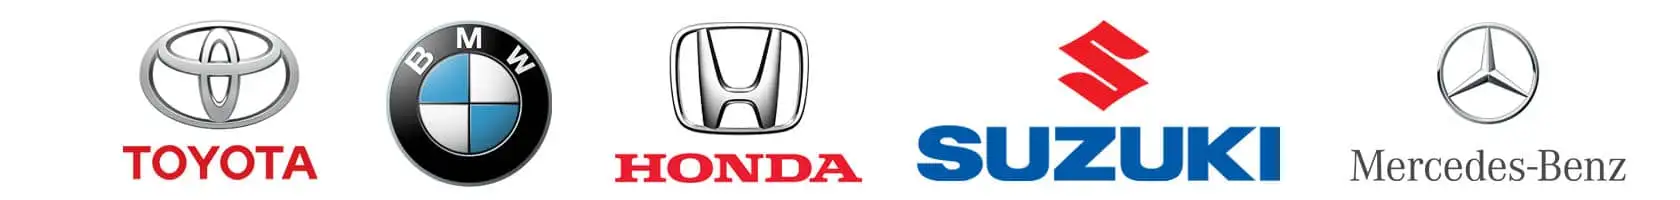 Suzuki-honda-Toyota-Mercedes-logo